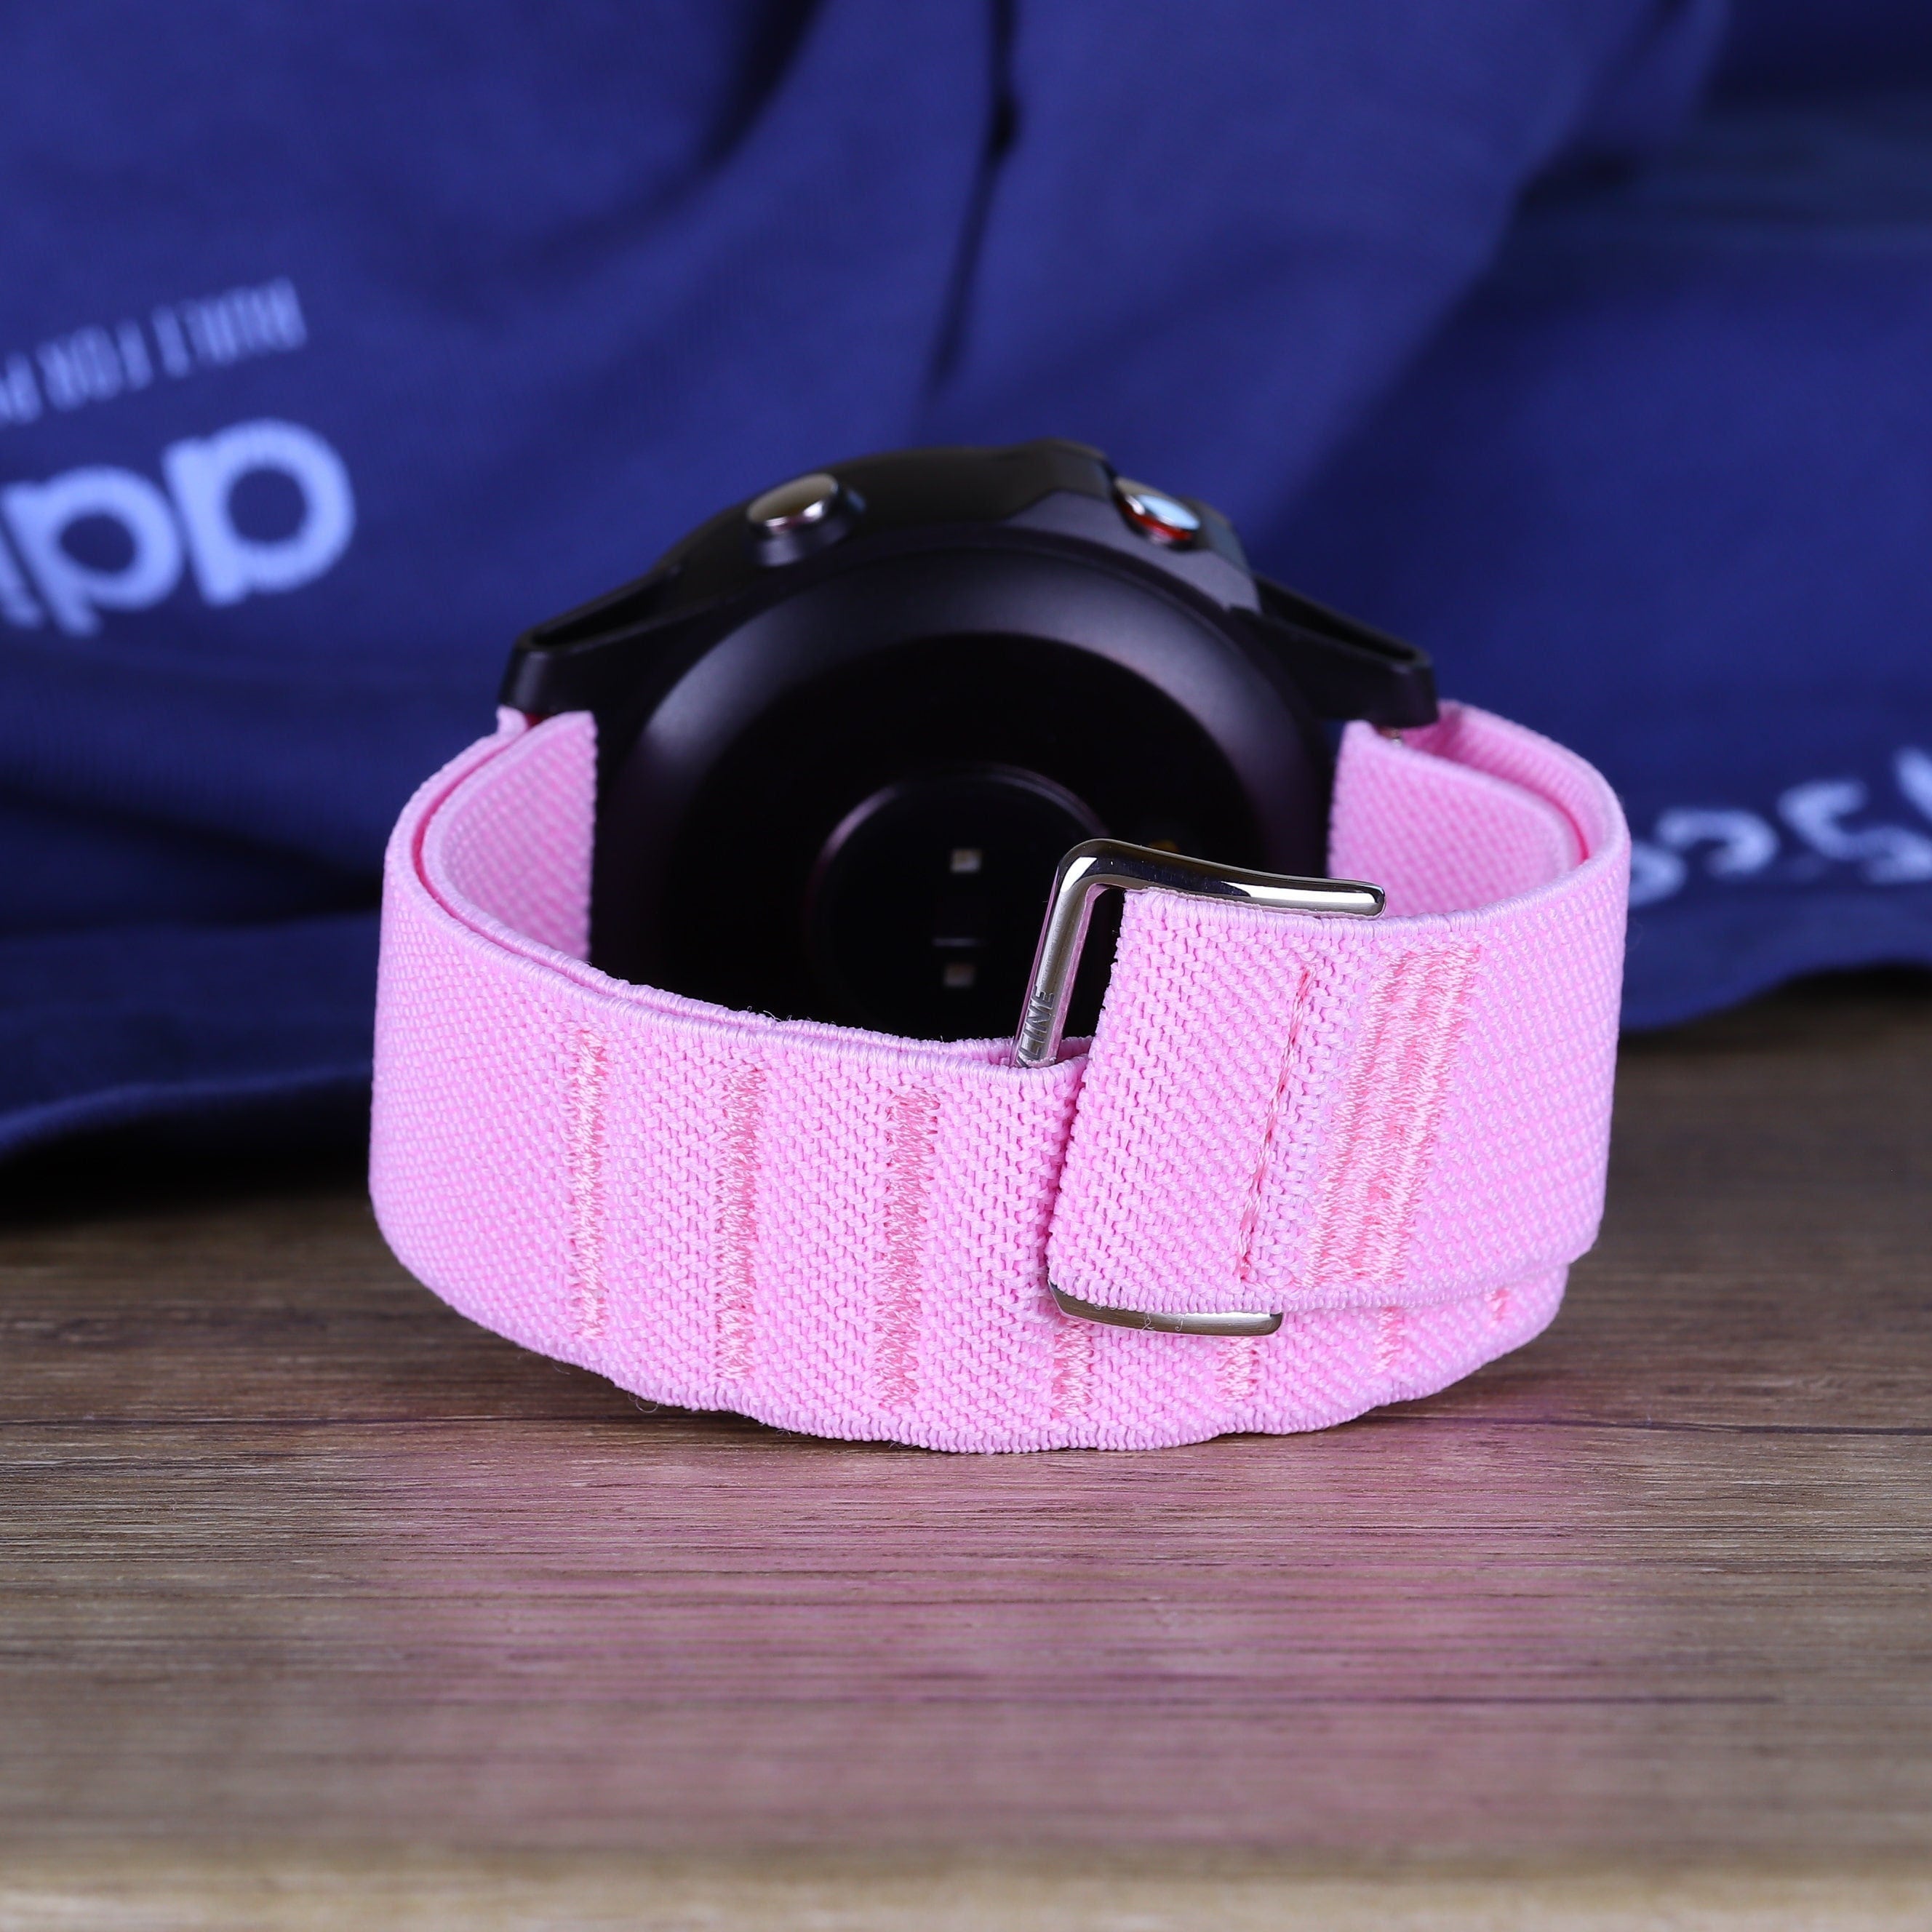 PureGear Velcro Watch Bands 3 Pack for Samsung Galaxy Watch 5/6